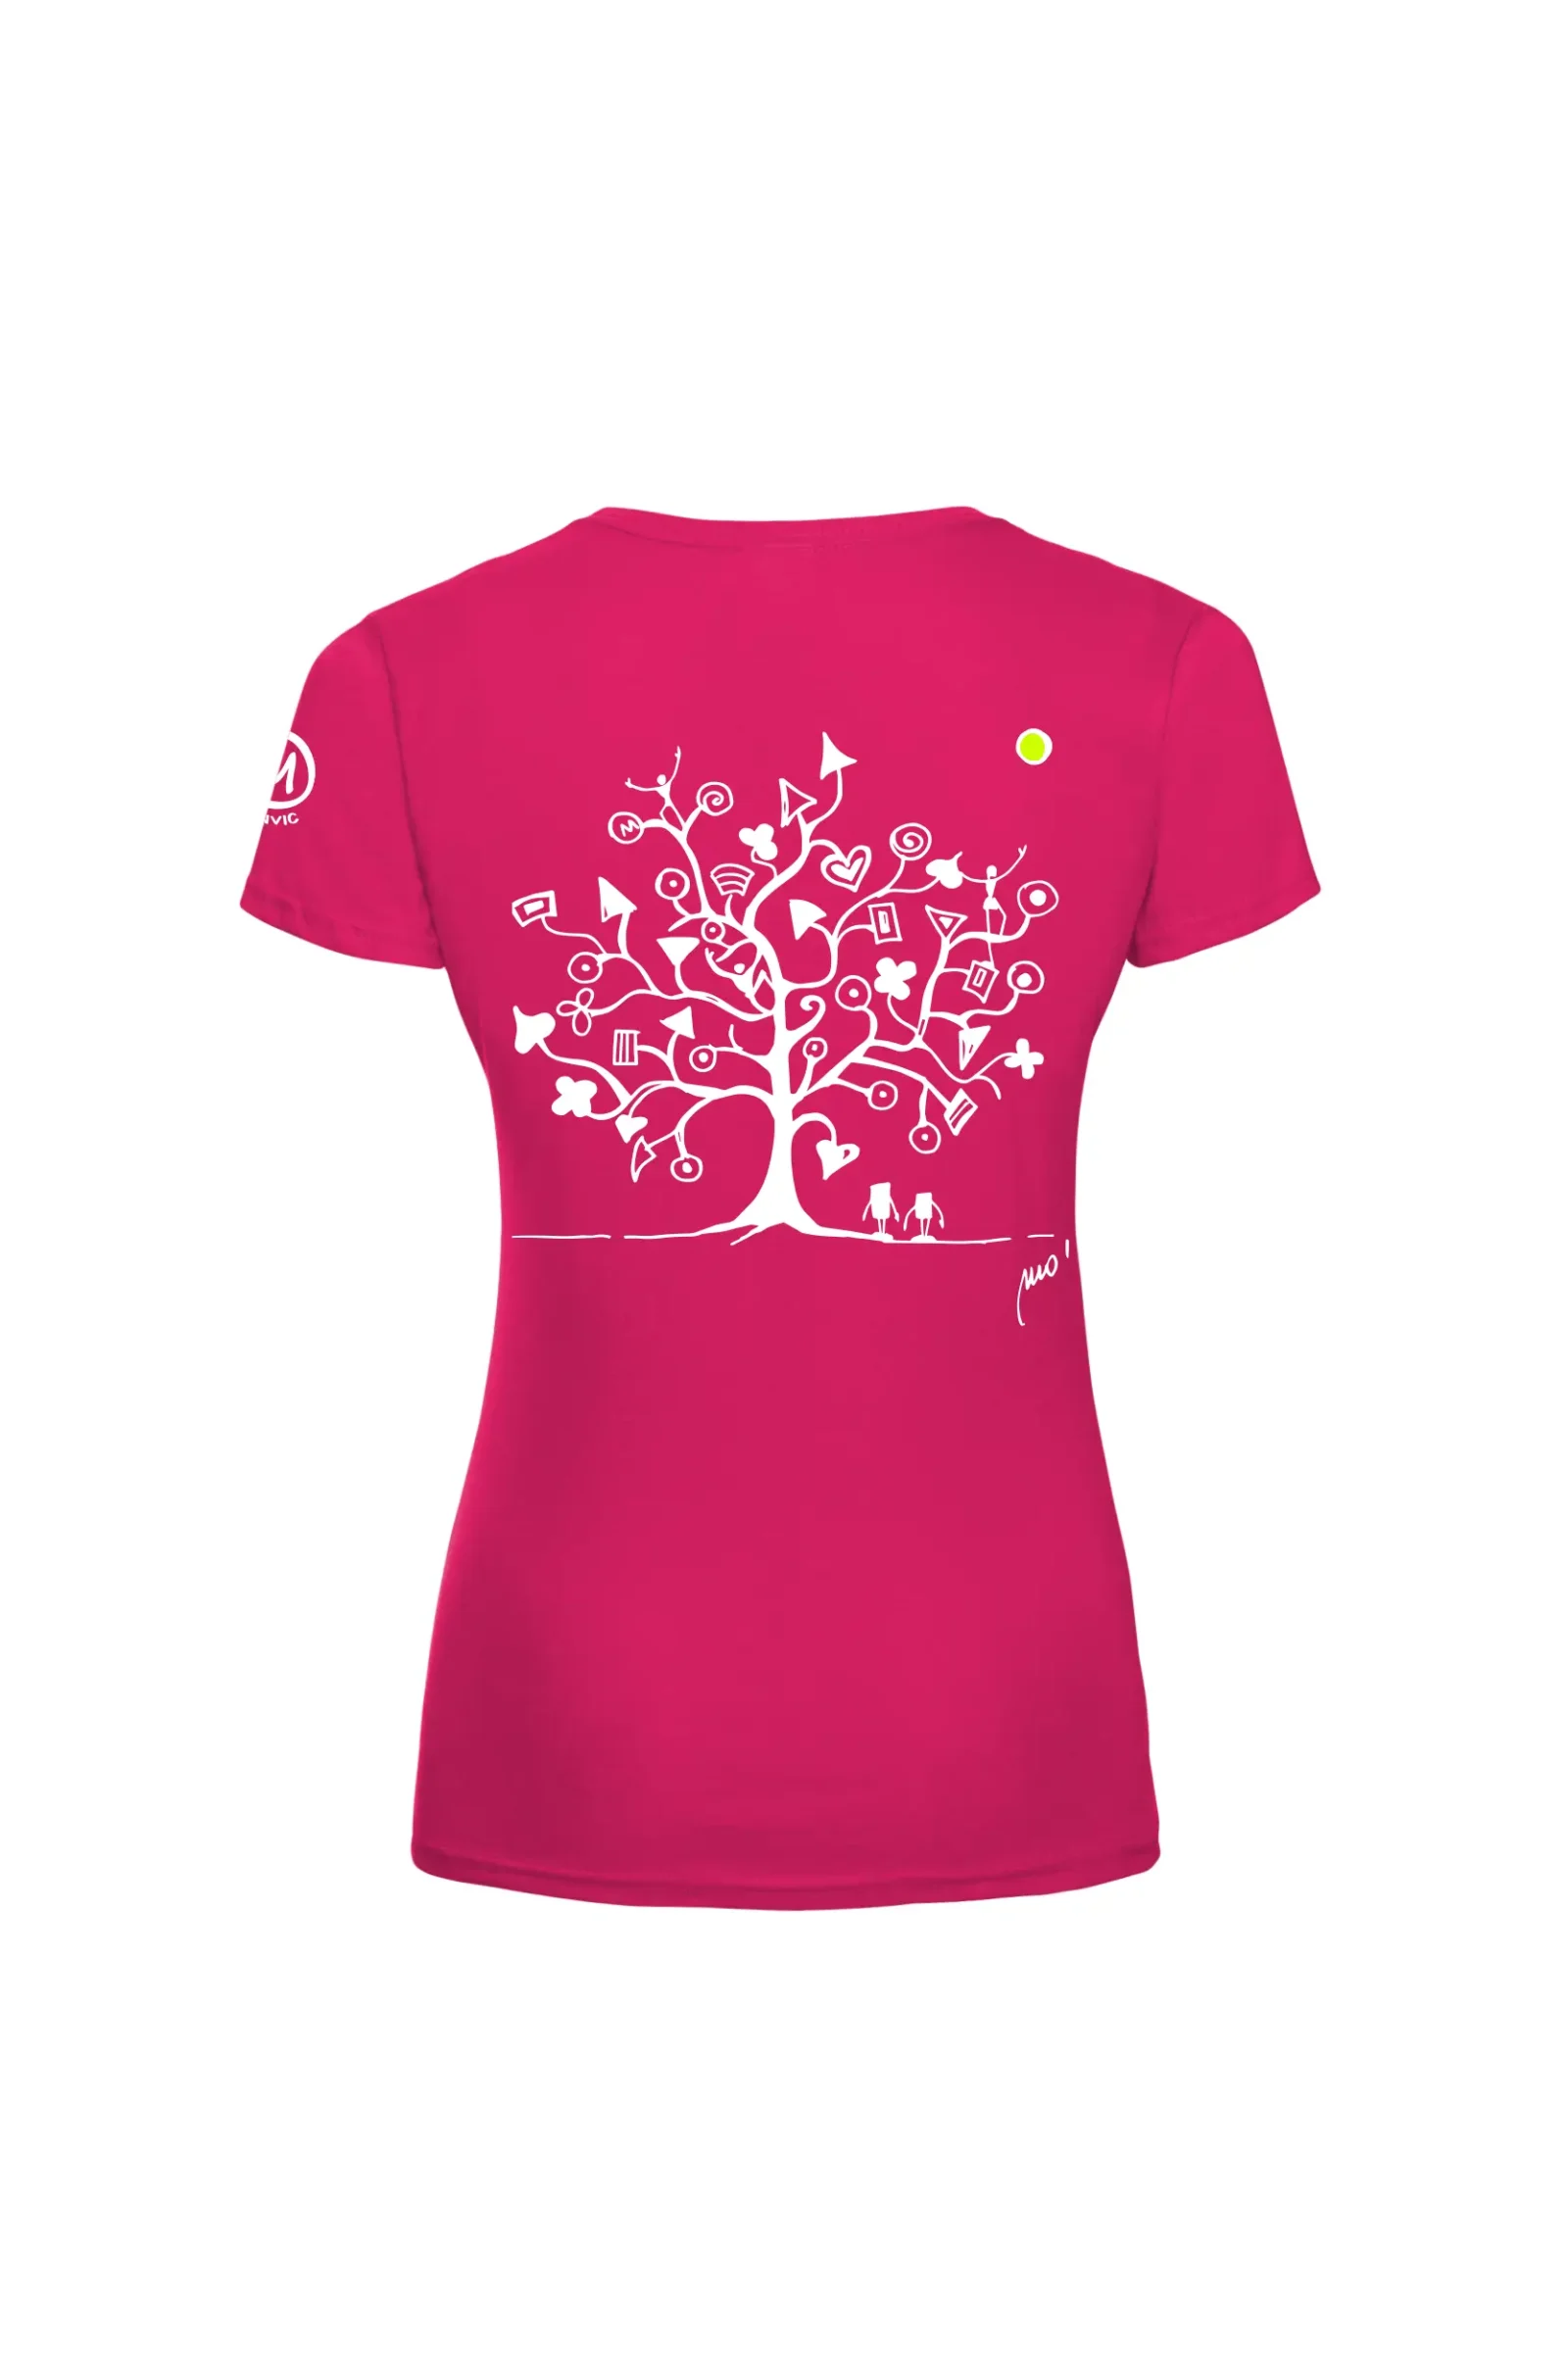 T-shirt arrampicata donna - cotone fucsia - grafica "Magic Tree" -SHARON MONVIC